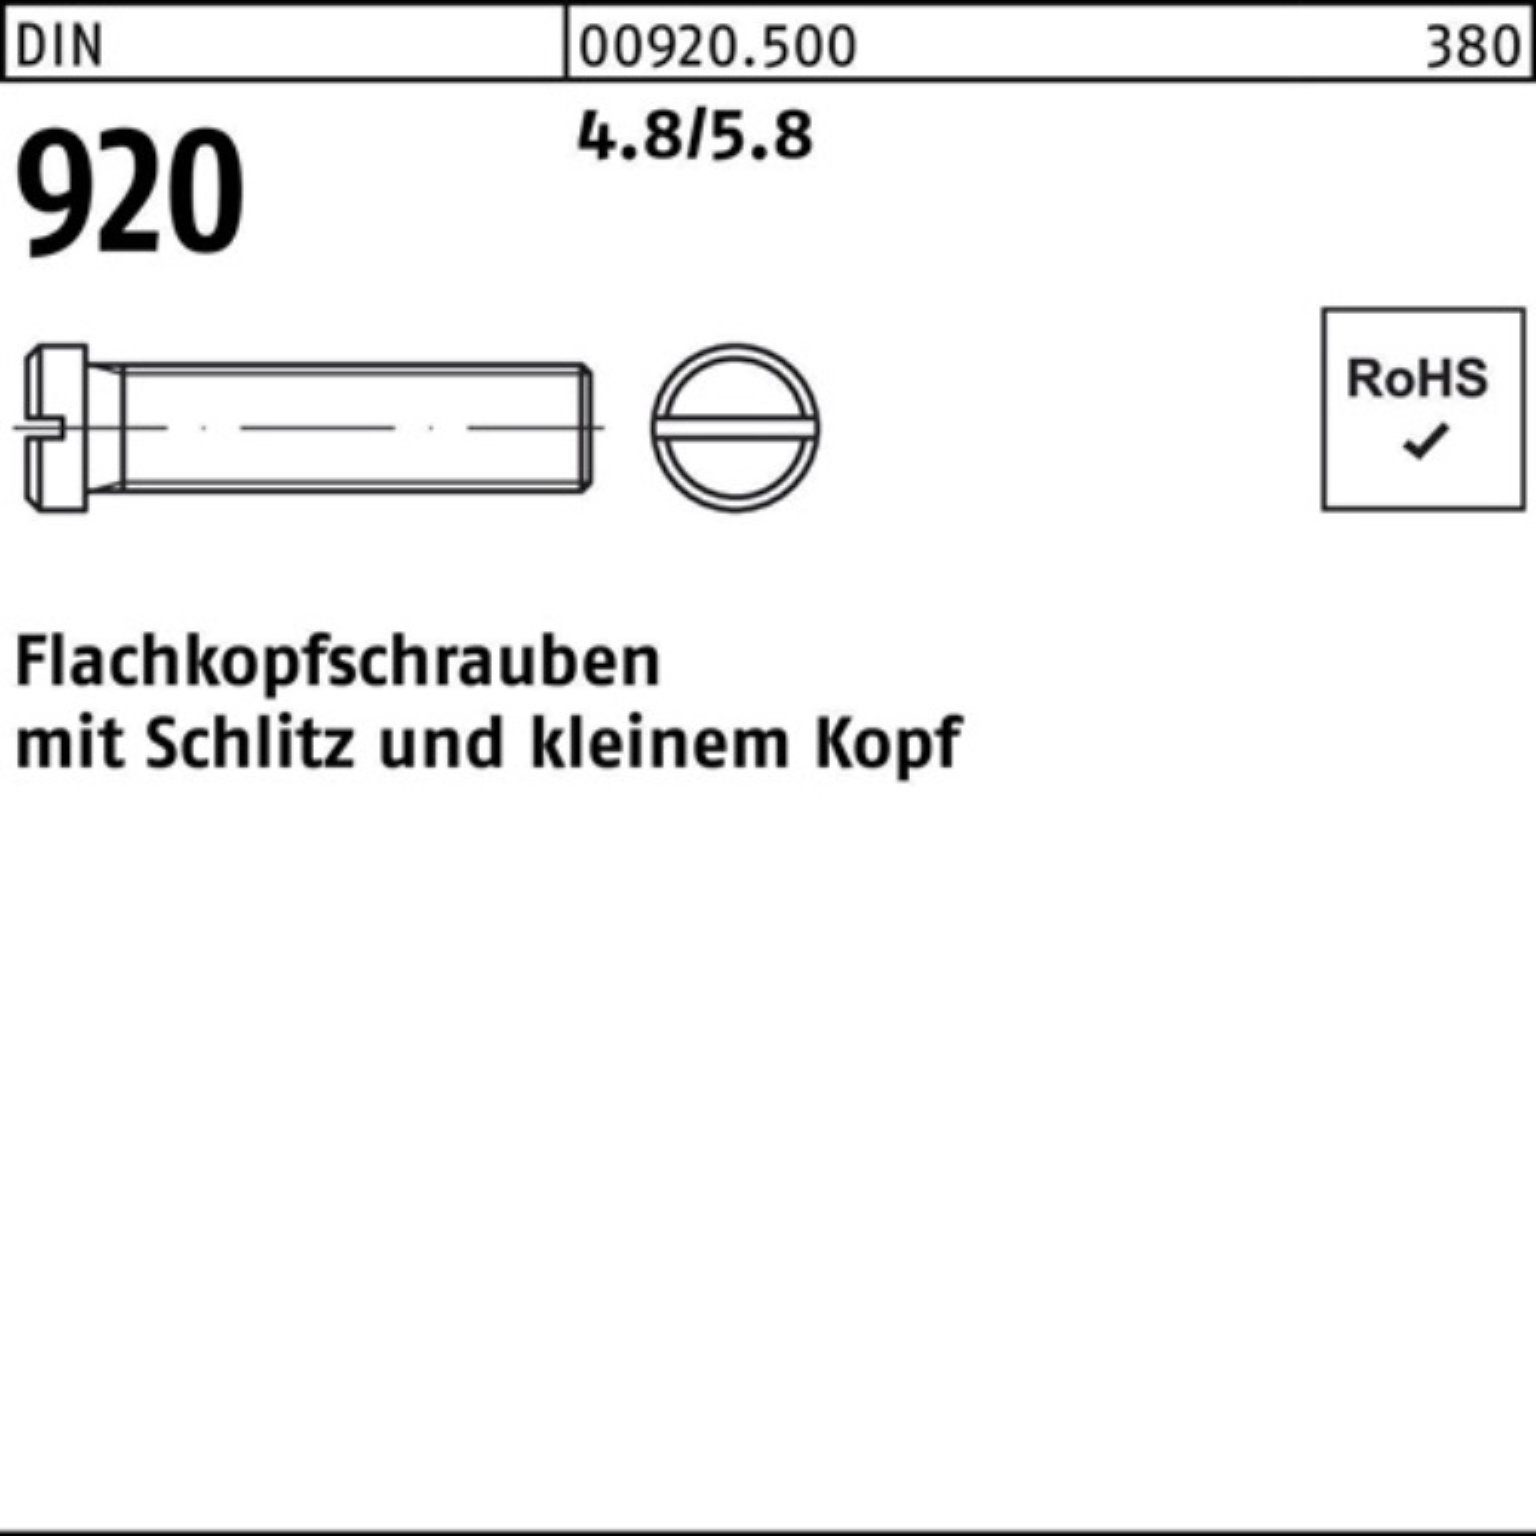 Reyher Schraube 100er Pack Flachkopfschraube DIN 920 Schlitz M5x 12 4.8/5.8 100 Stück